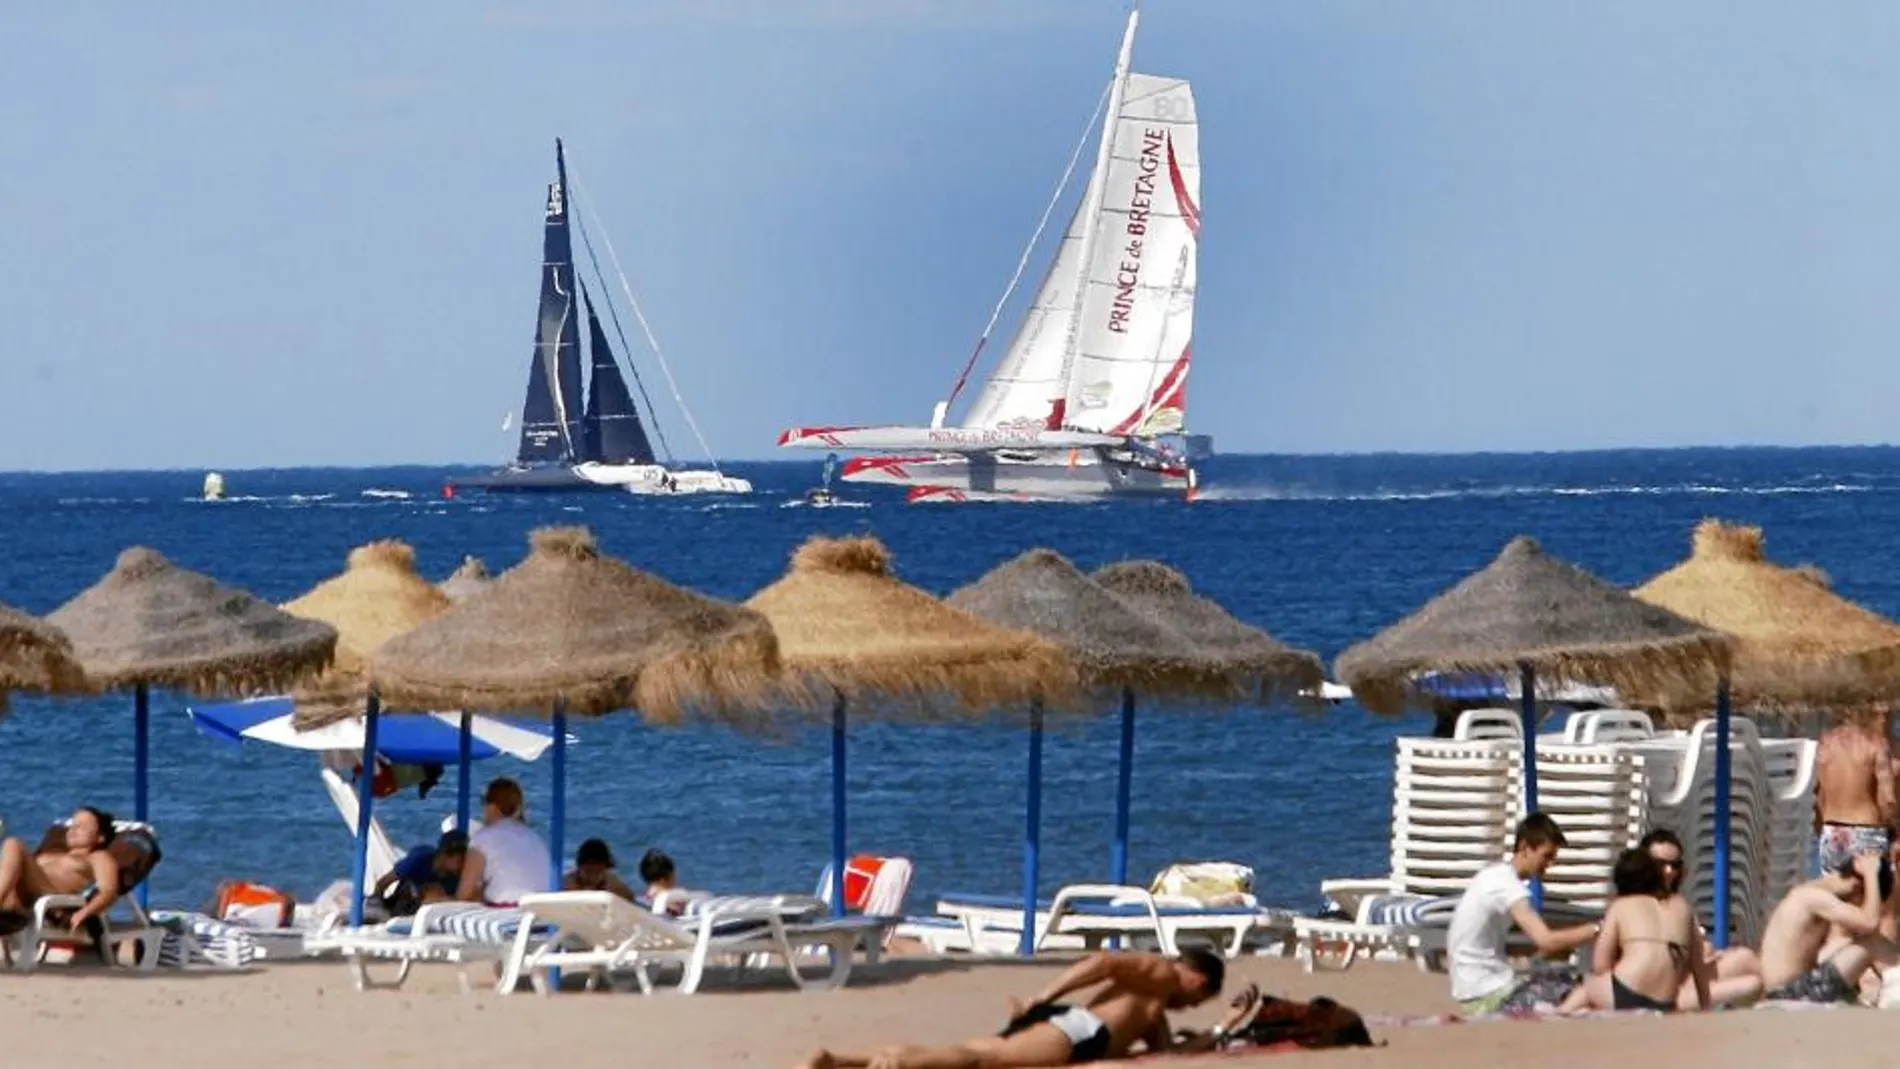 Las regatas acompañaron ayer a los valencianos que decidieron disfrutar de la playa de la Malvarrosa